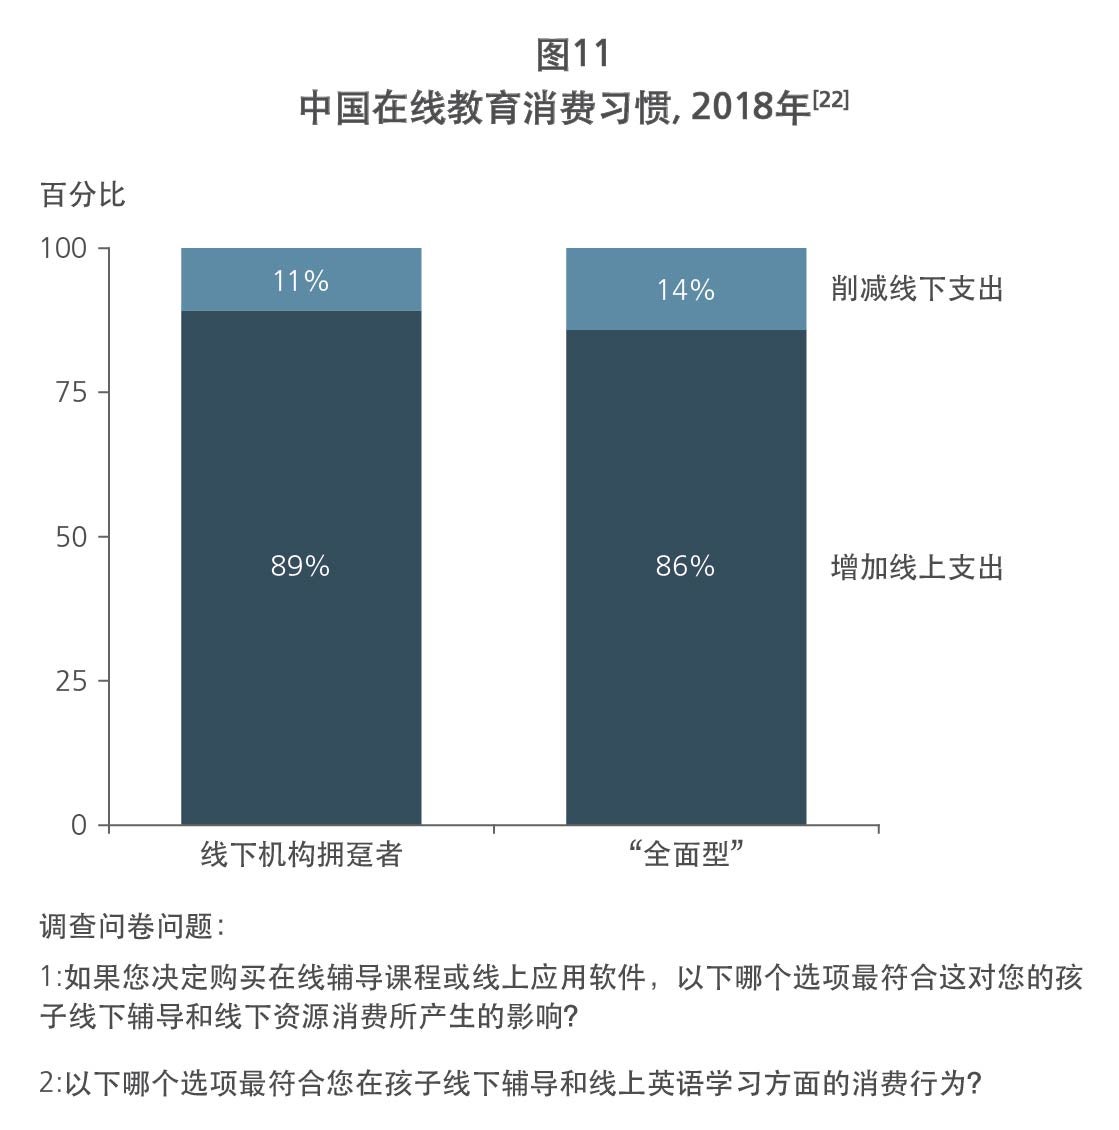 Chinese spending behavior on online education 2018